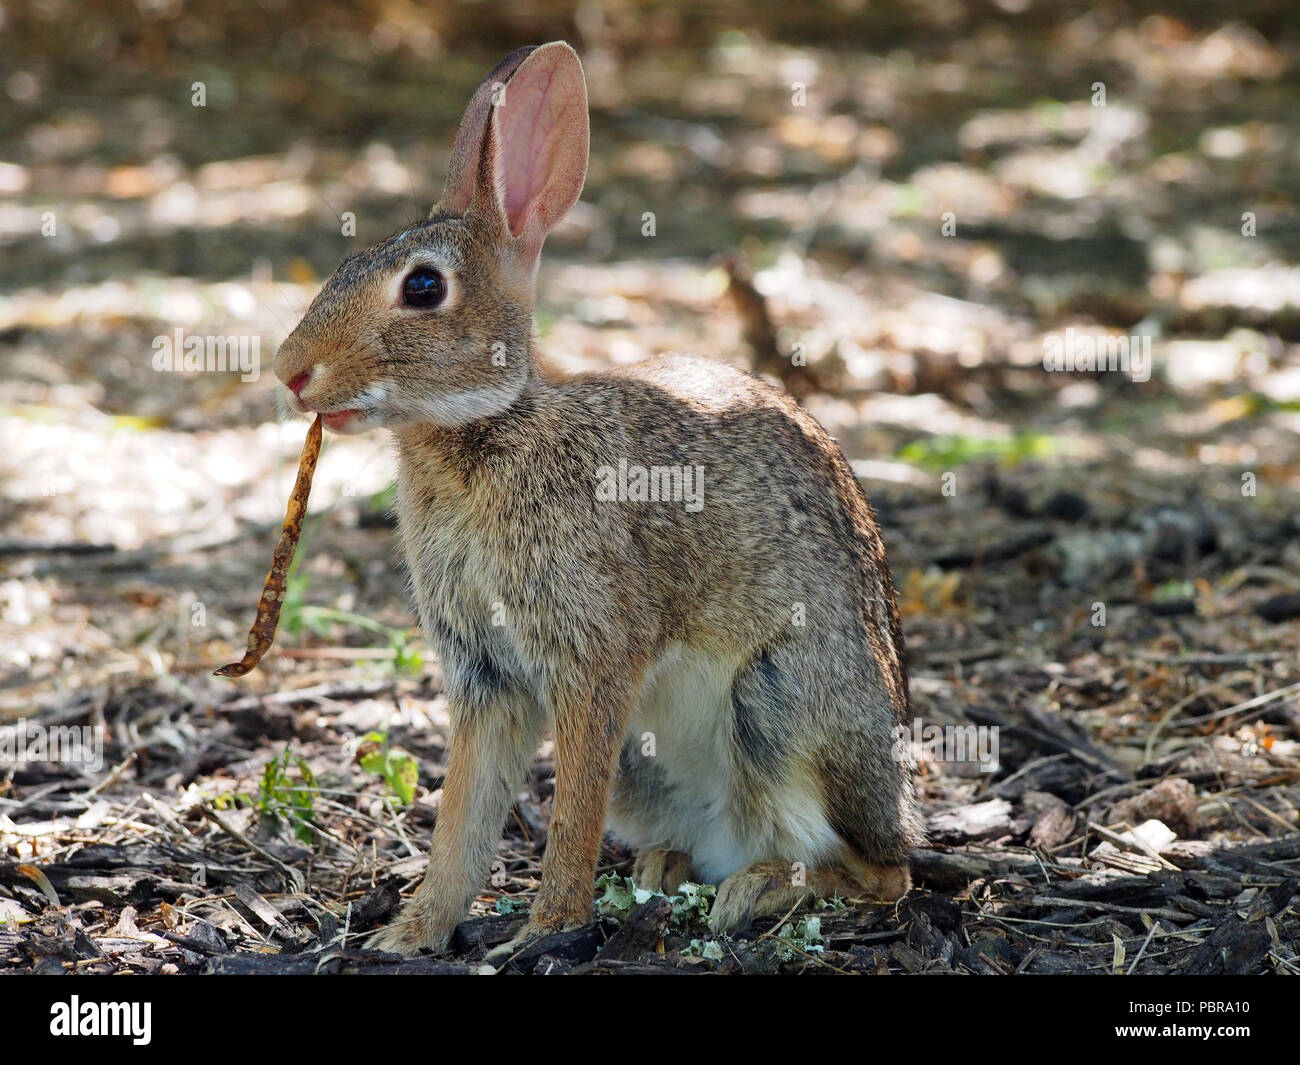 Cottontail Rabbit munches auf einen gefallenen Samen pod aus einem der reiche Süden Texas Mesquite Bäume. South Texas Botanischen Gärten. Corpus Christi, TX. Stockfoto